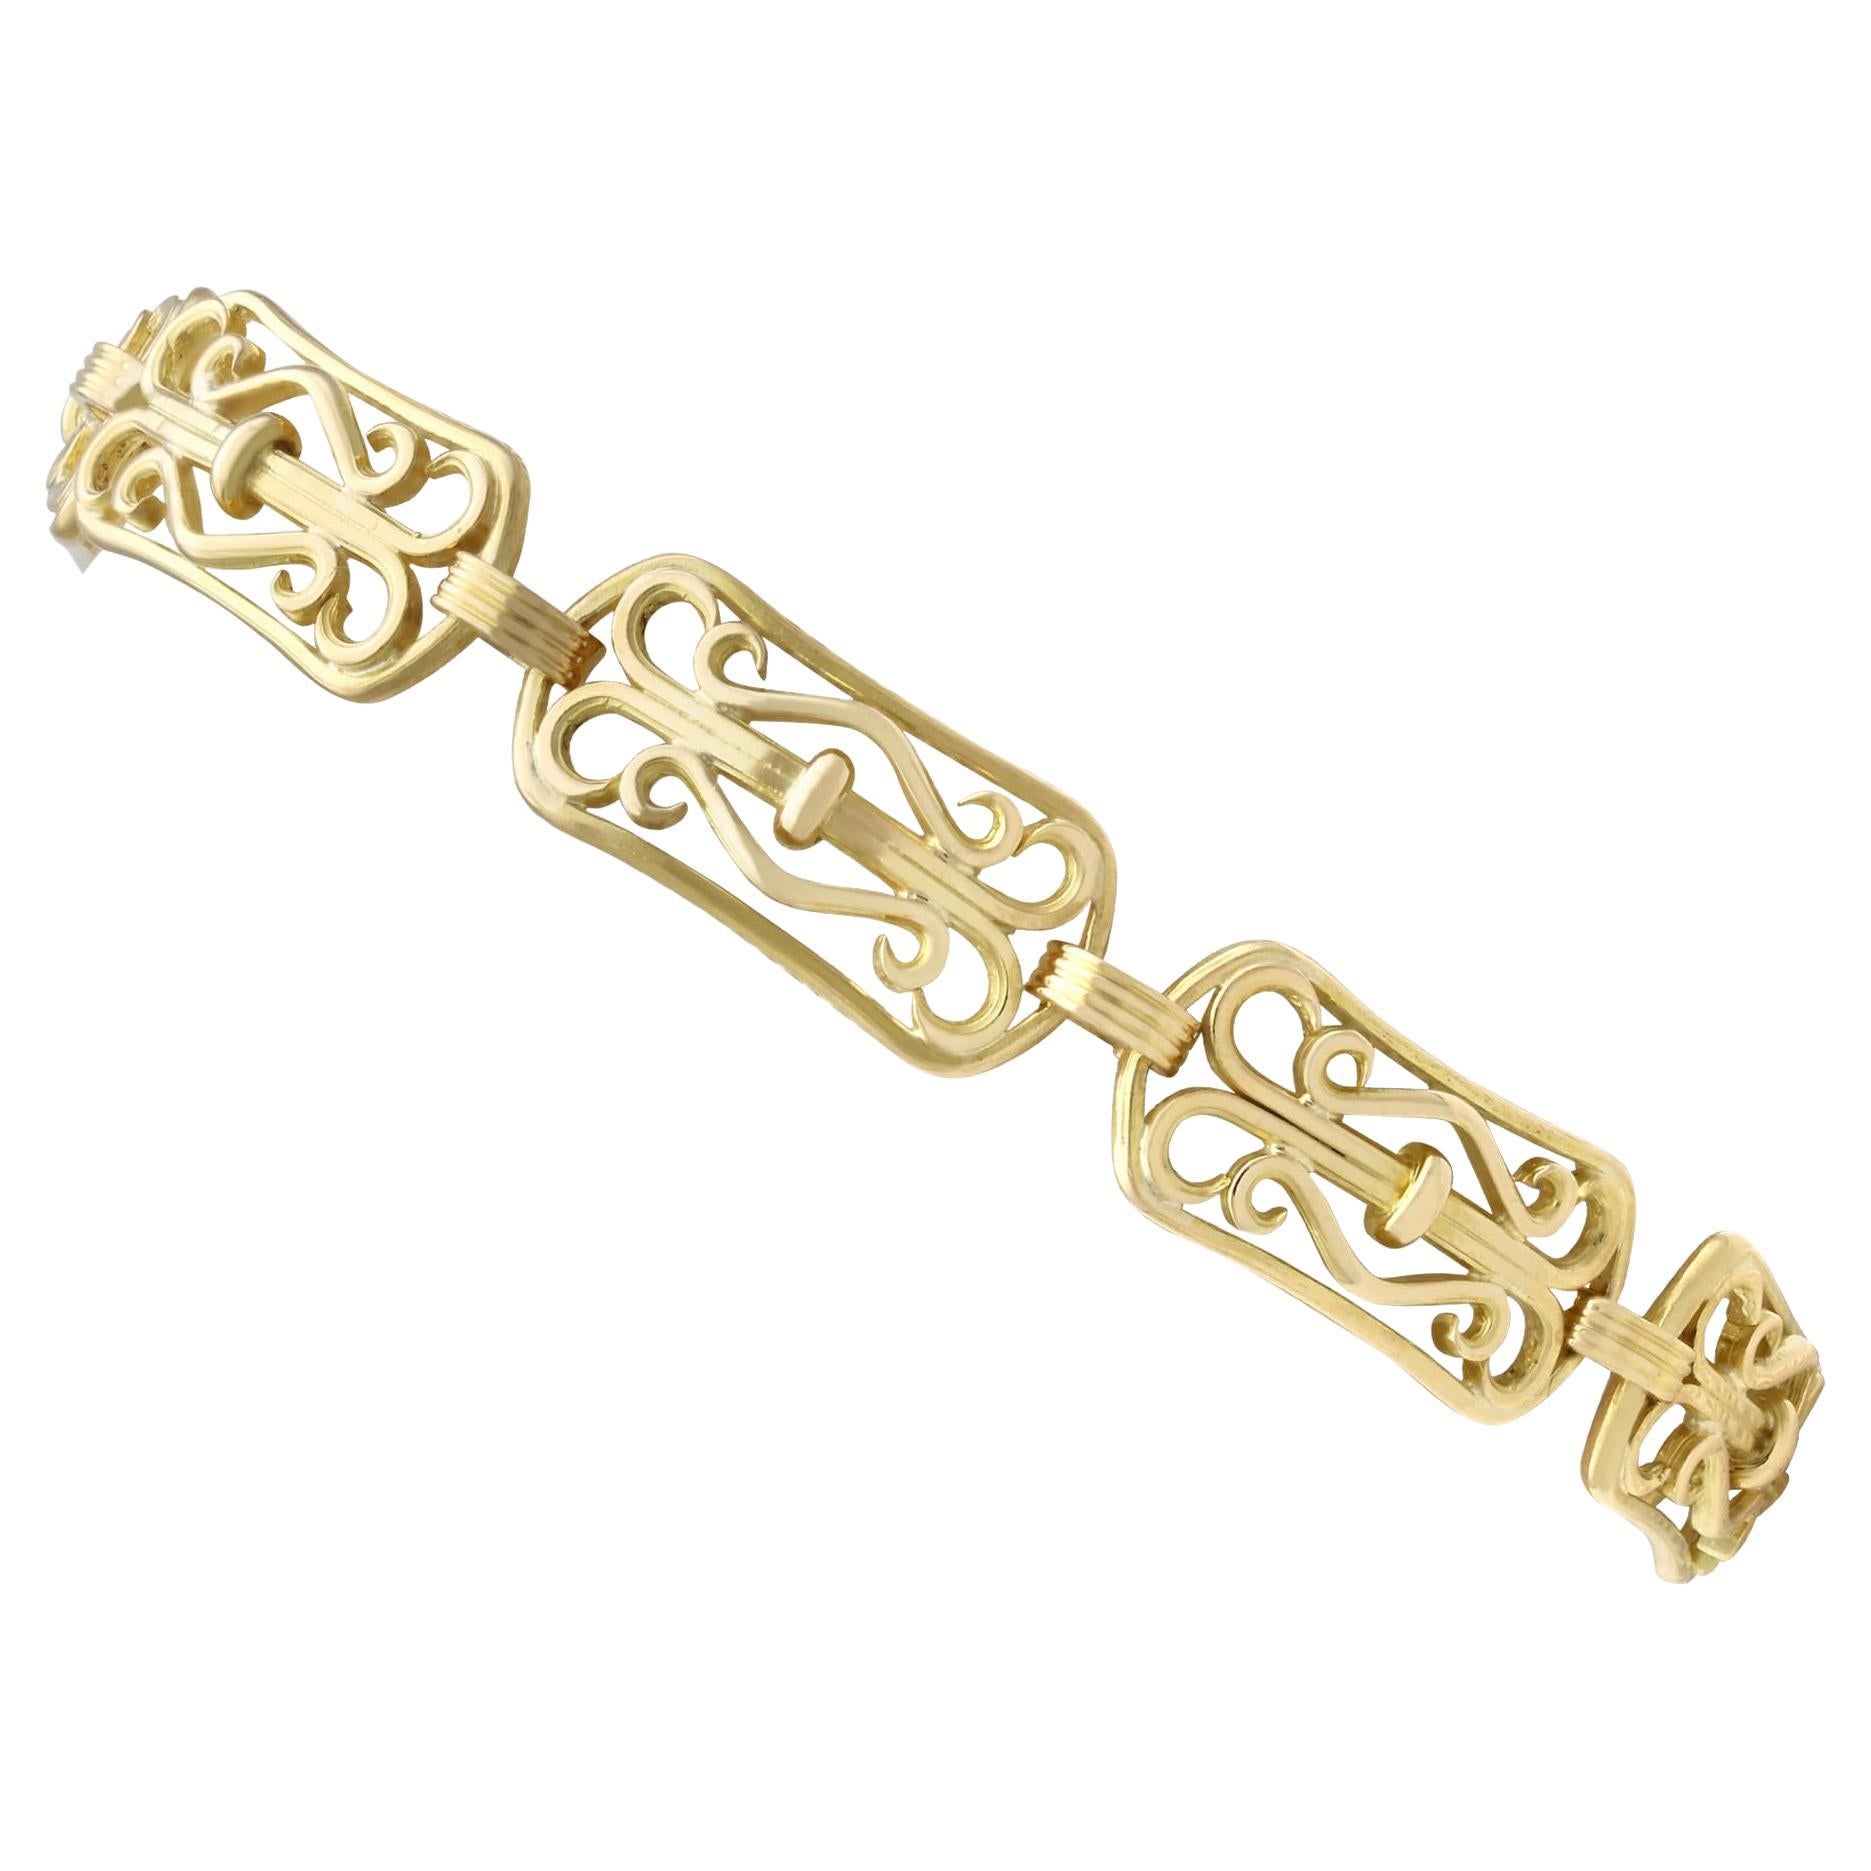 Antique French Art Nouveau 18k Yellow Gold Bracelet